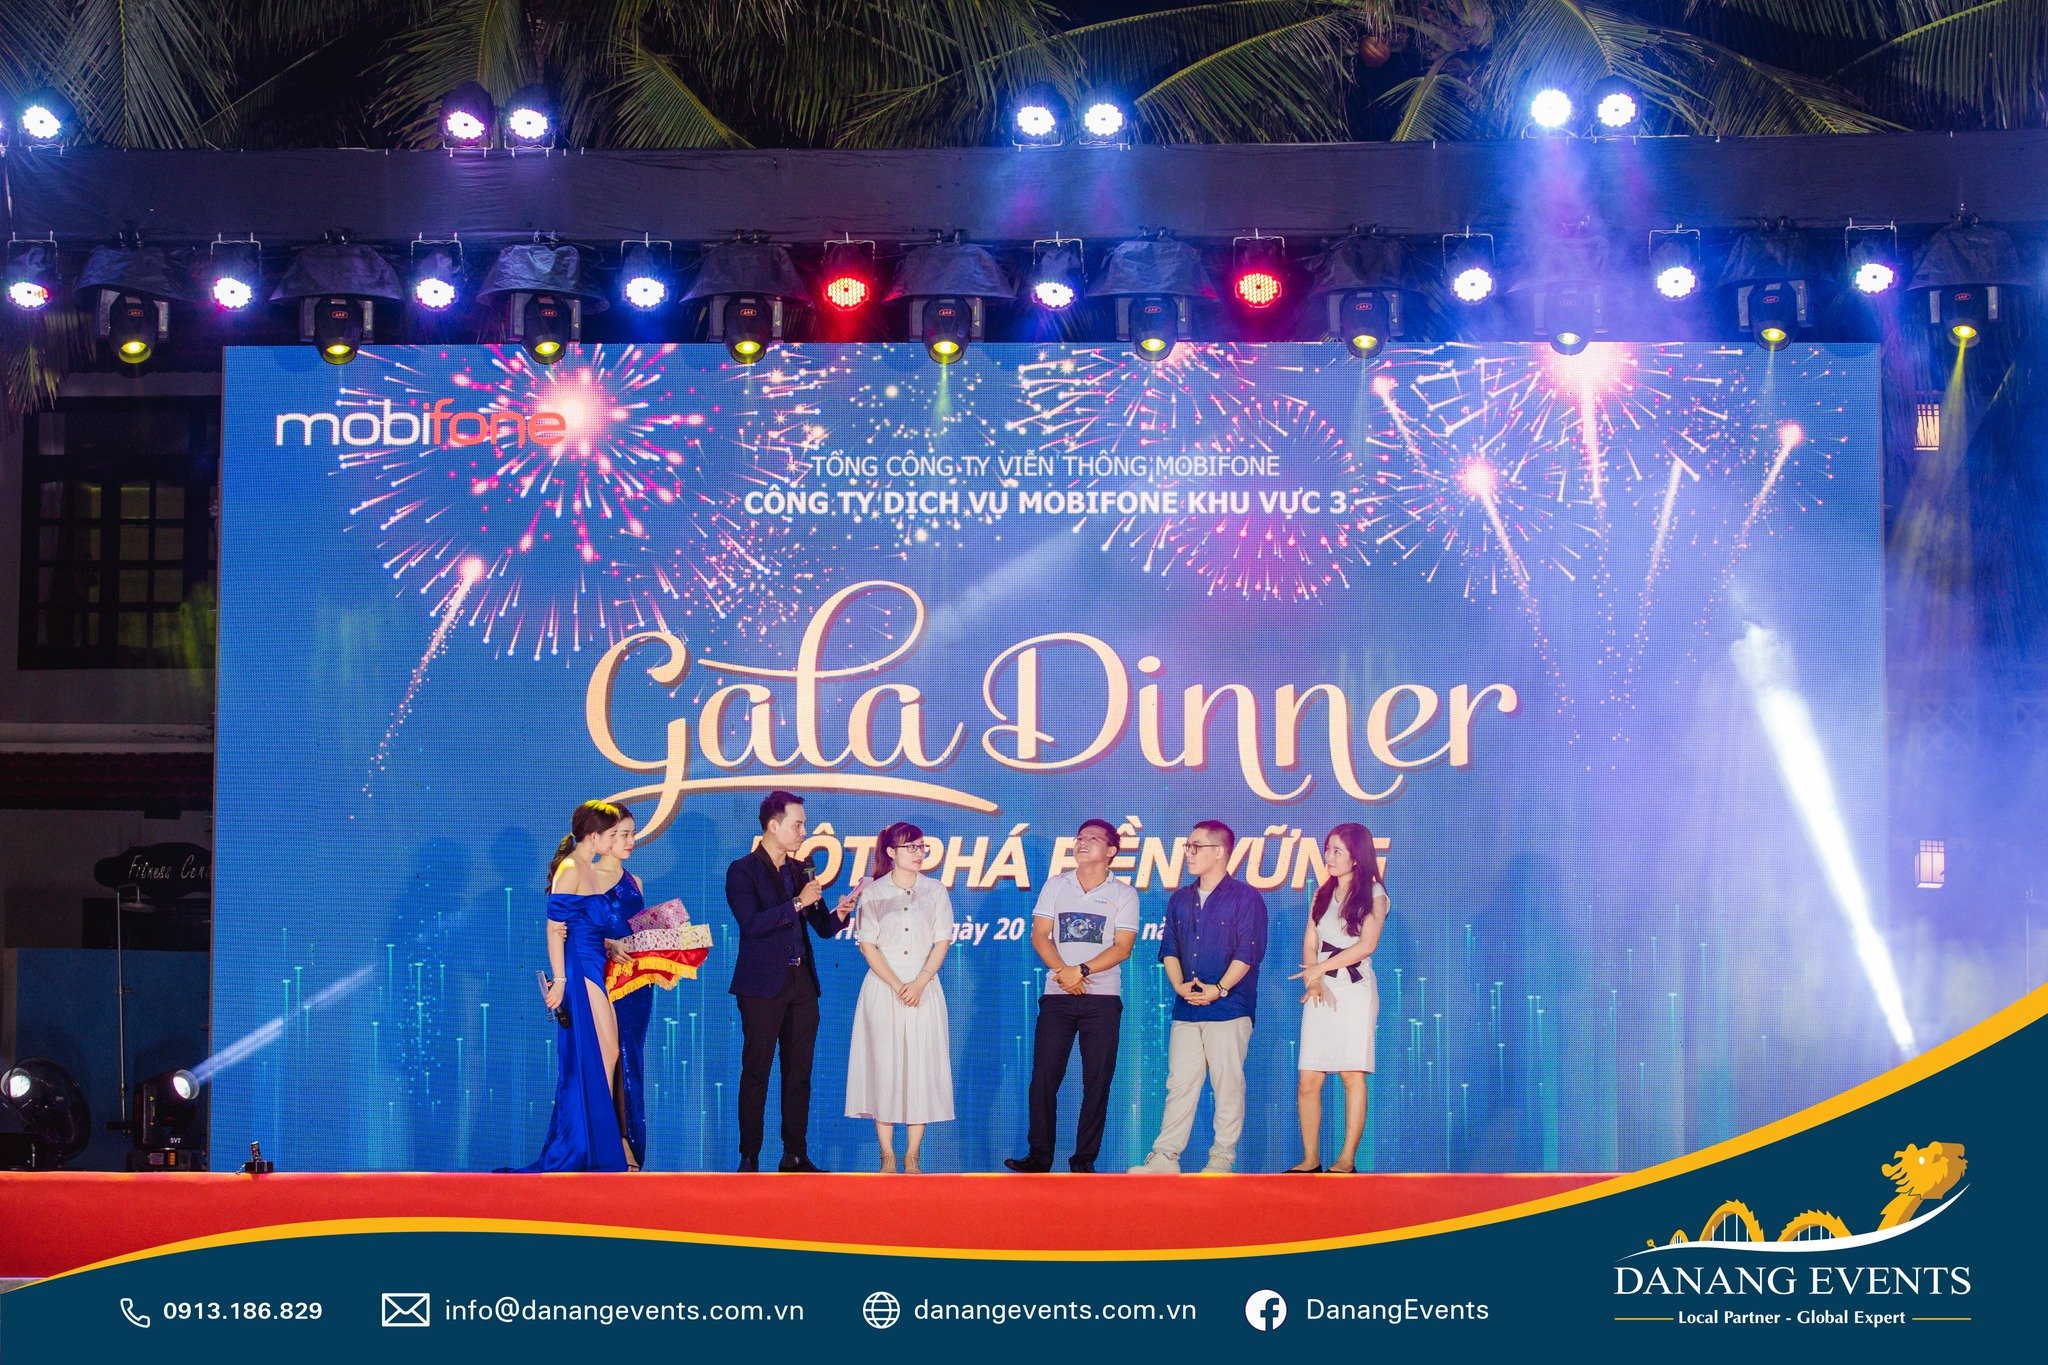 Gala Dinner là tiệc tối thân mật mang tính chất giải trí và thư giãn cho khách mời tham gia